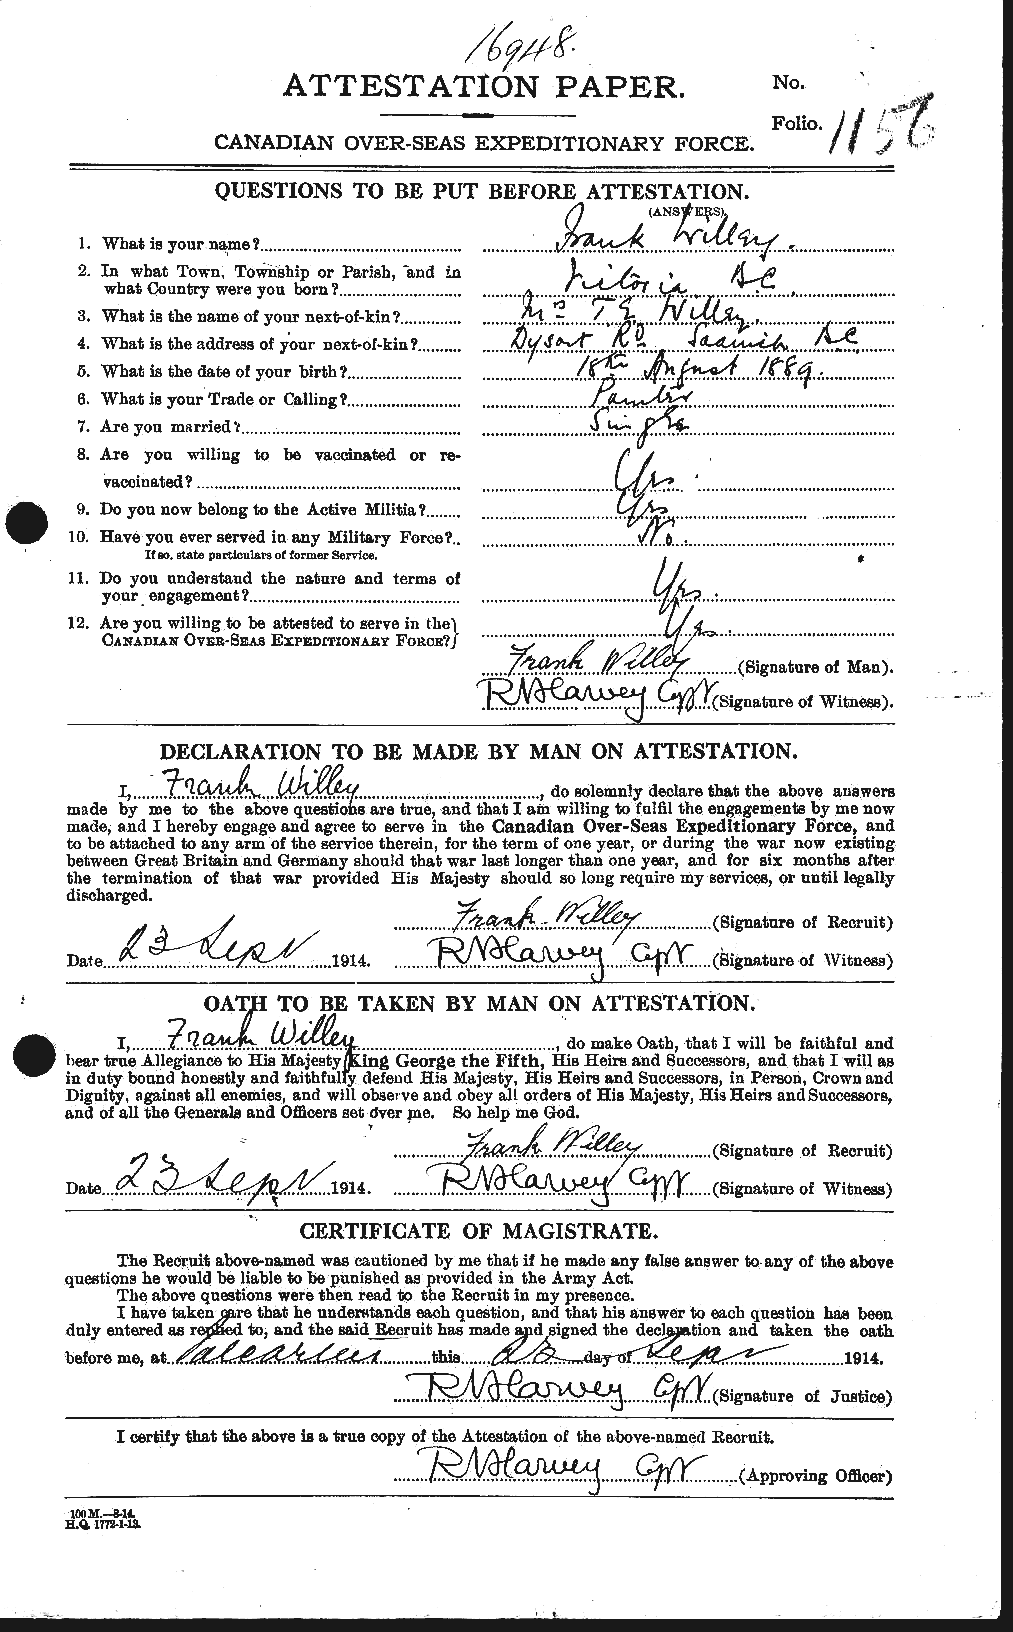 Dossiers du Personnel de la Première Guerre mondiale - CEC 675363a